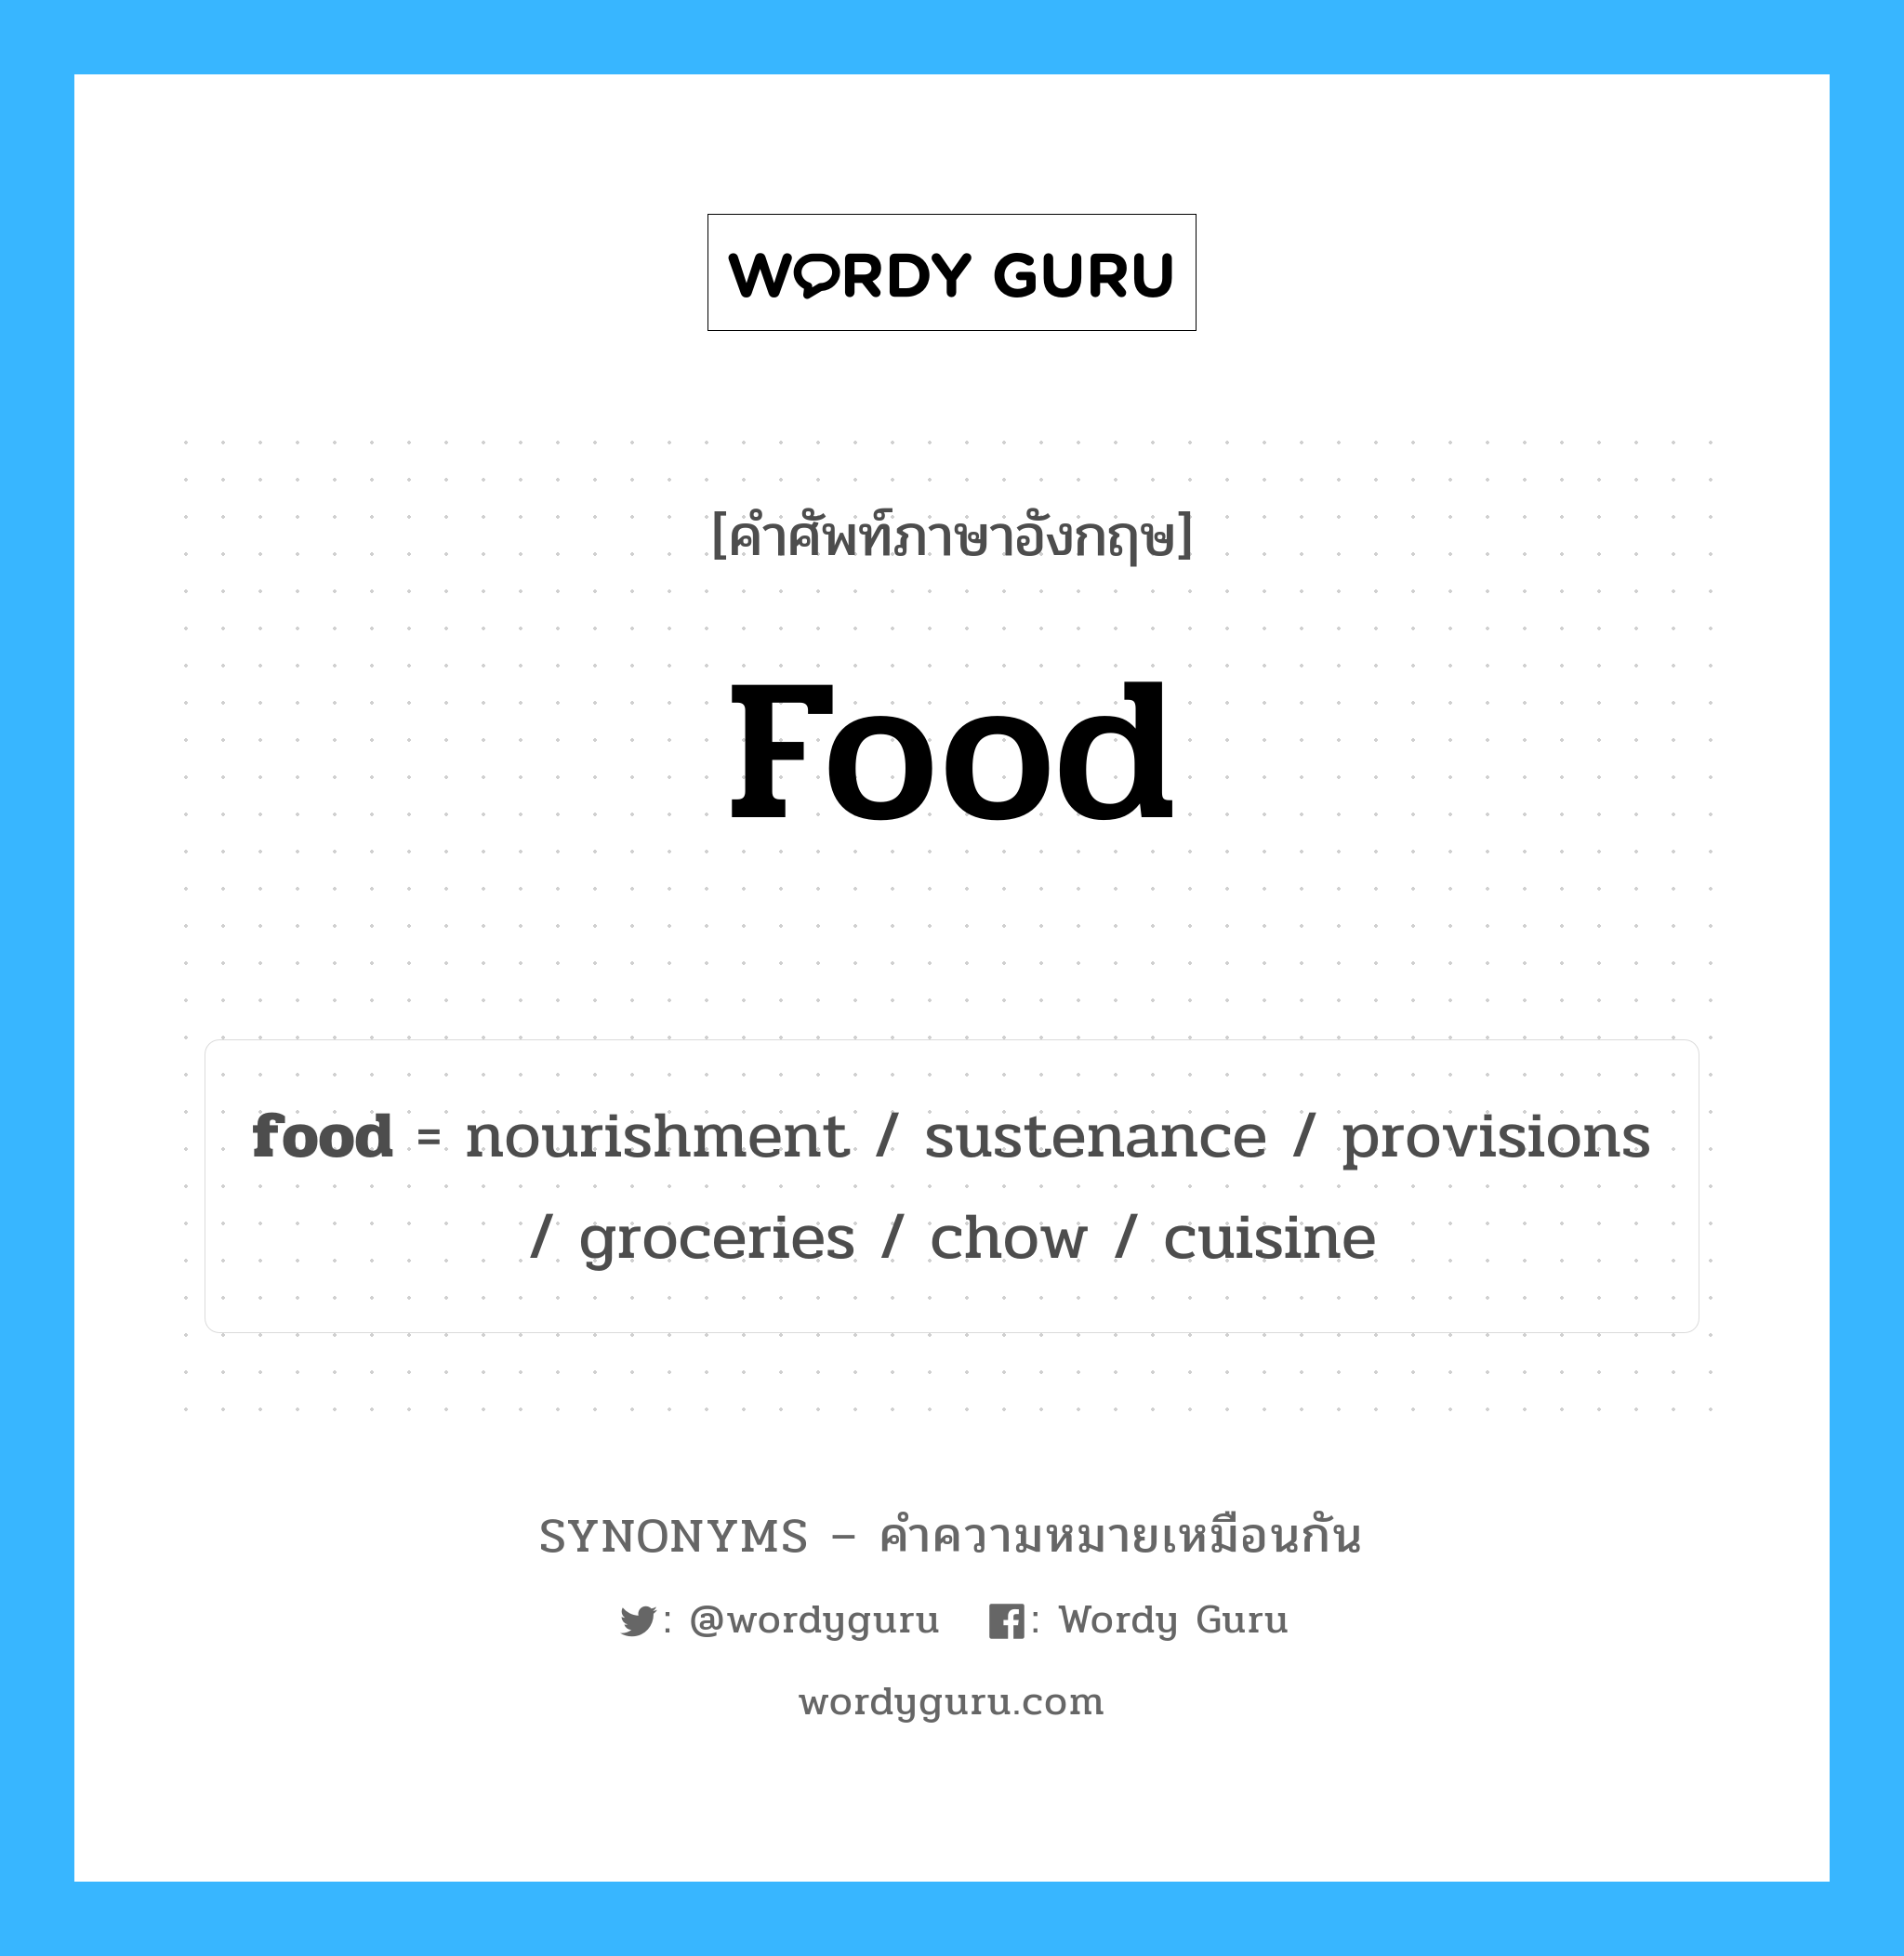 nourishment เป็นหนึ่งใน food และมีคำอื่น ๆ อีกดังนี้, คำศัพท์ภาษาอังกฤษ nourishment ความหมายคล้ายกันกับ food แปลว่า บำรุง หมวด food